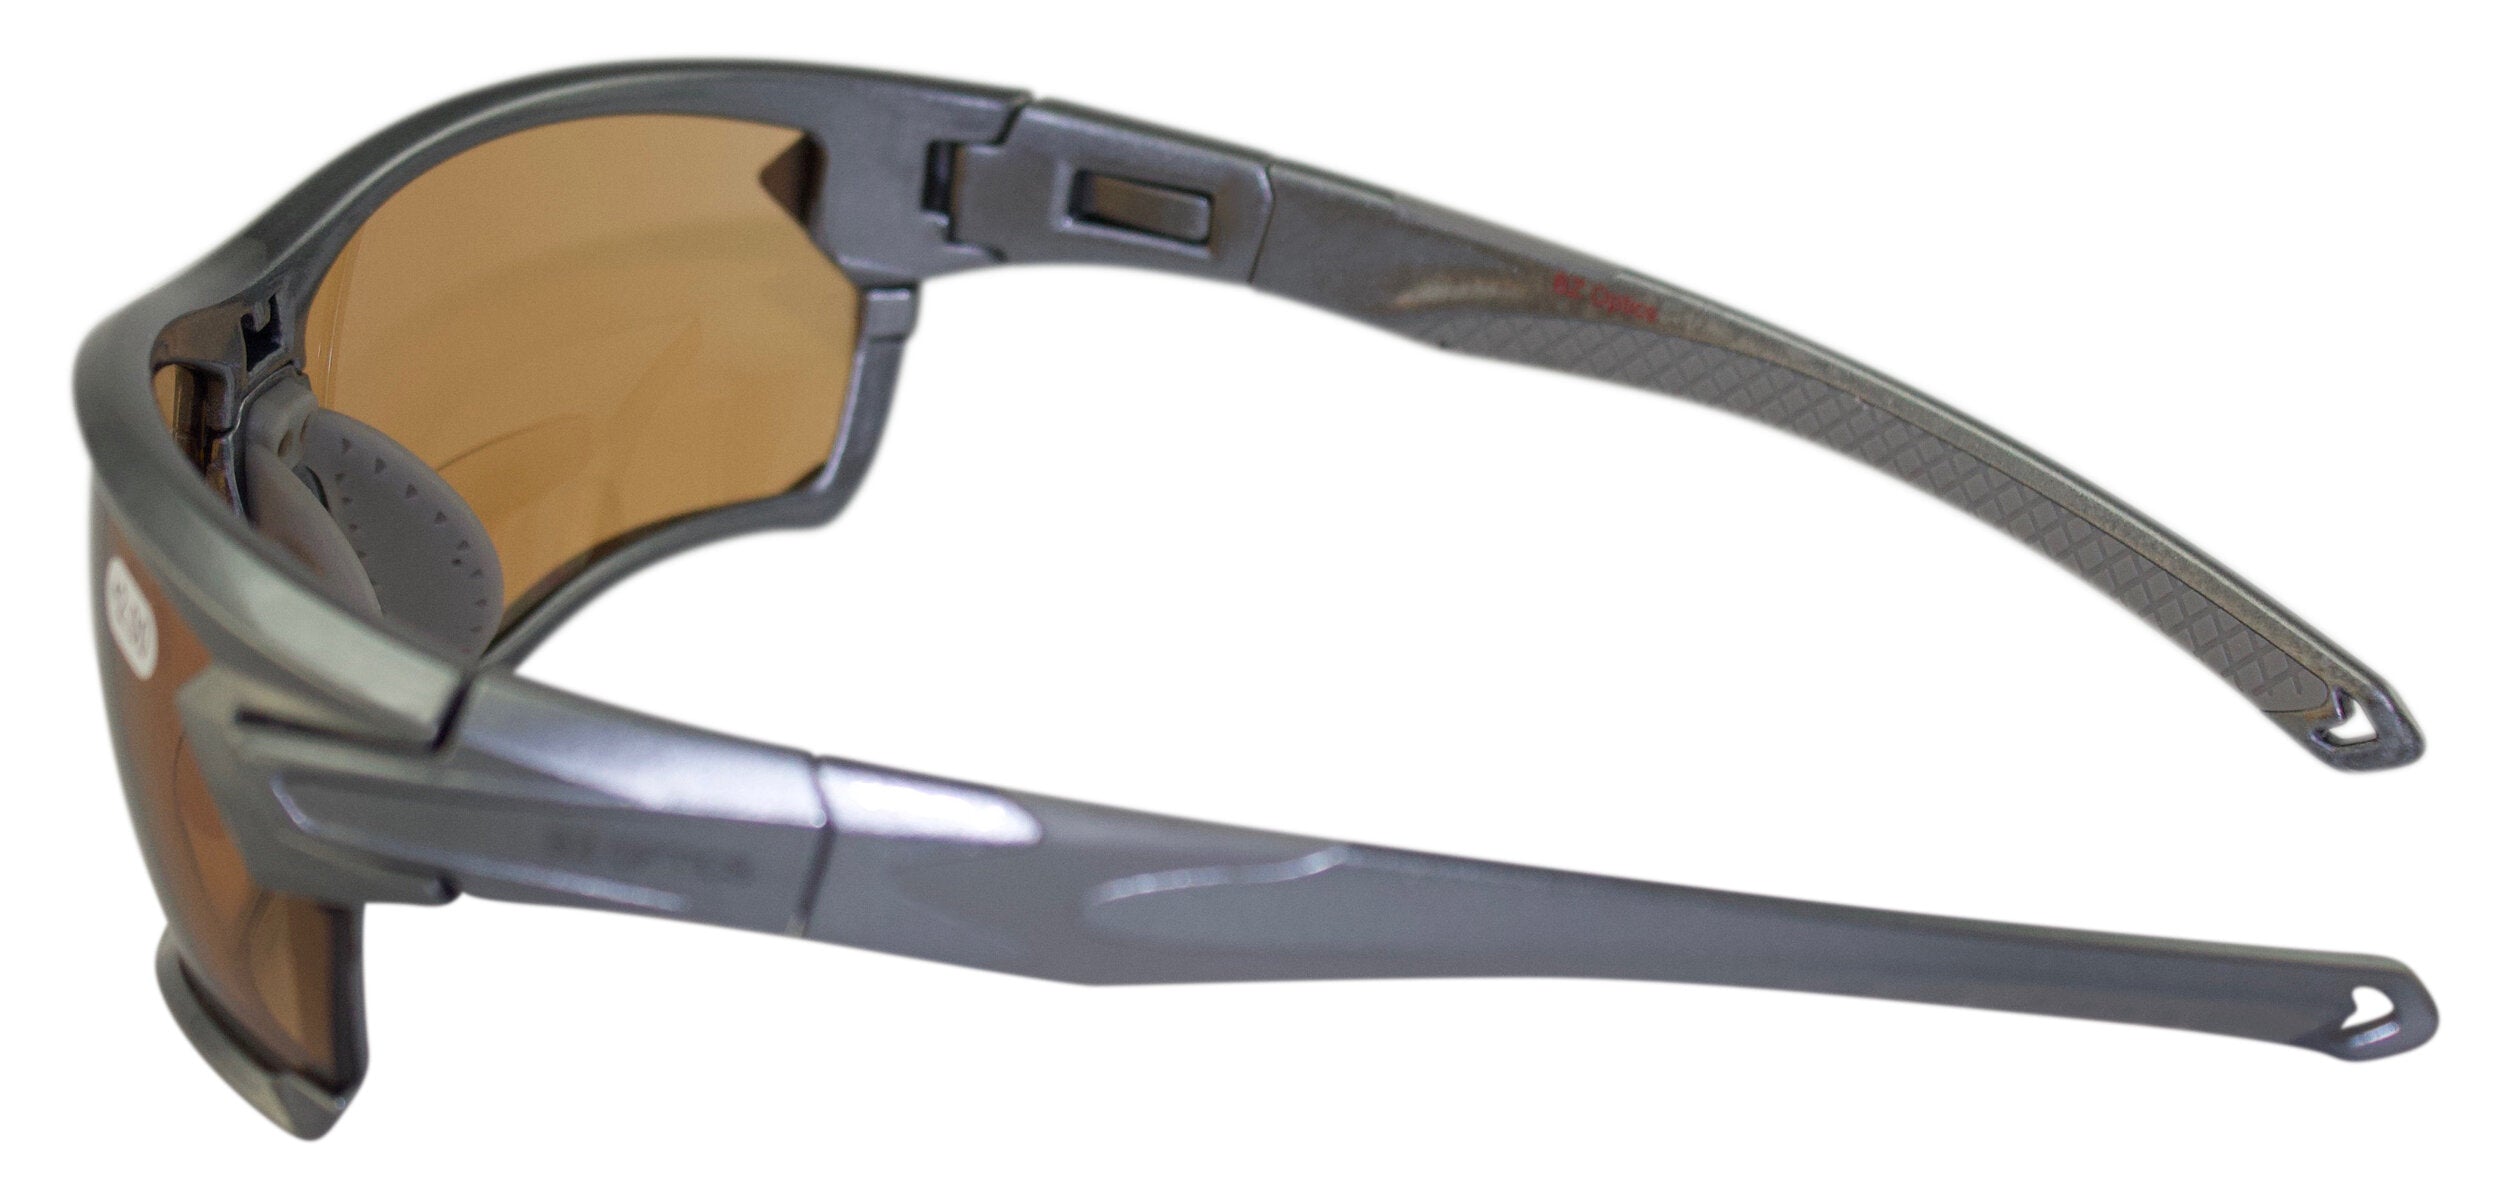 Lesehilfen-DiKo selbsttönend Tour bifocal GbR Sonnenbrille – Sport- braune Gläser